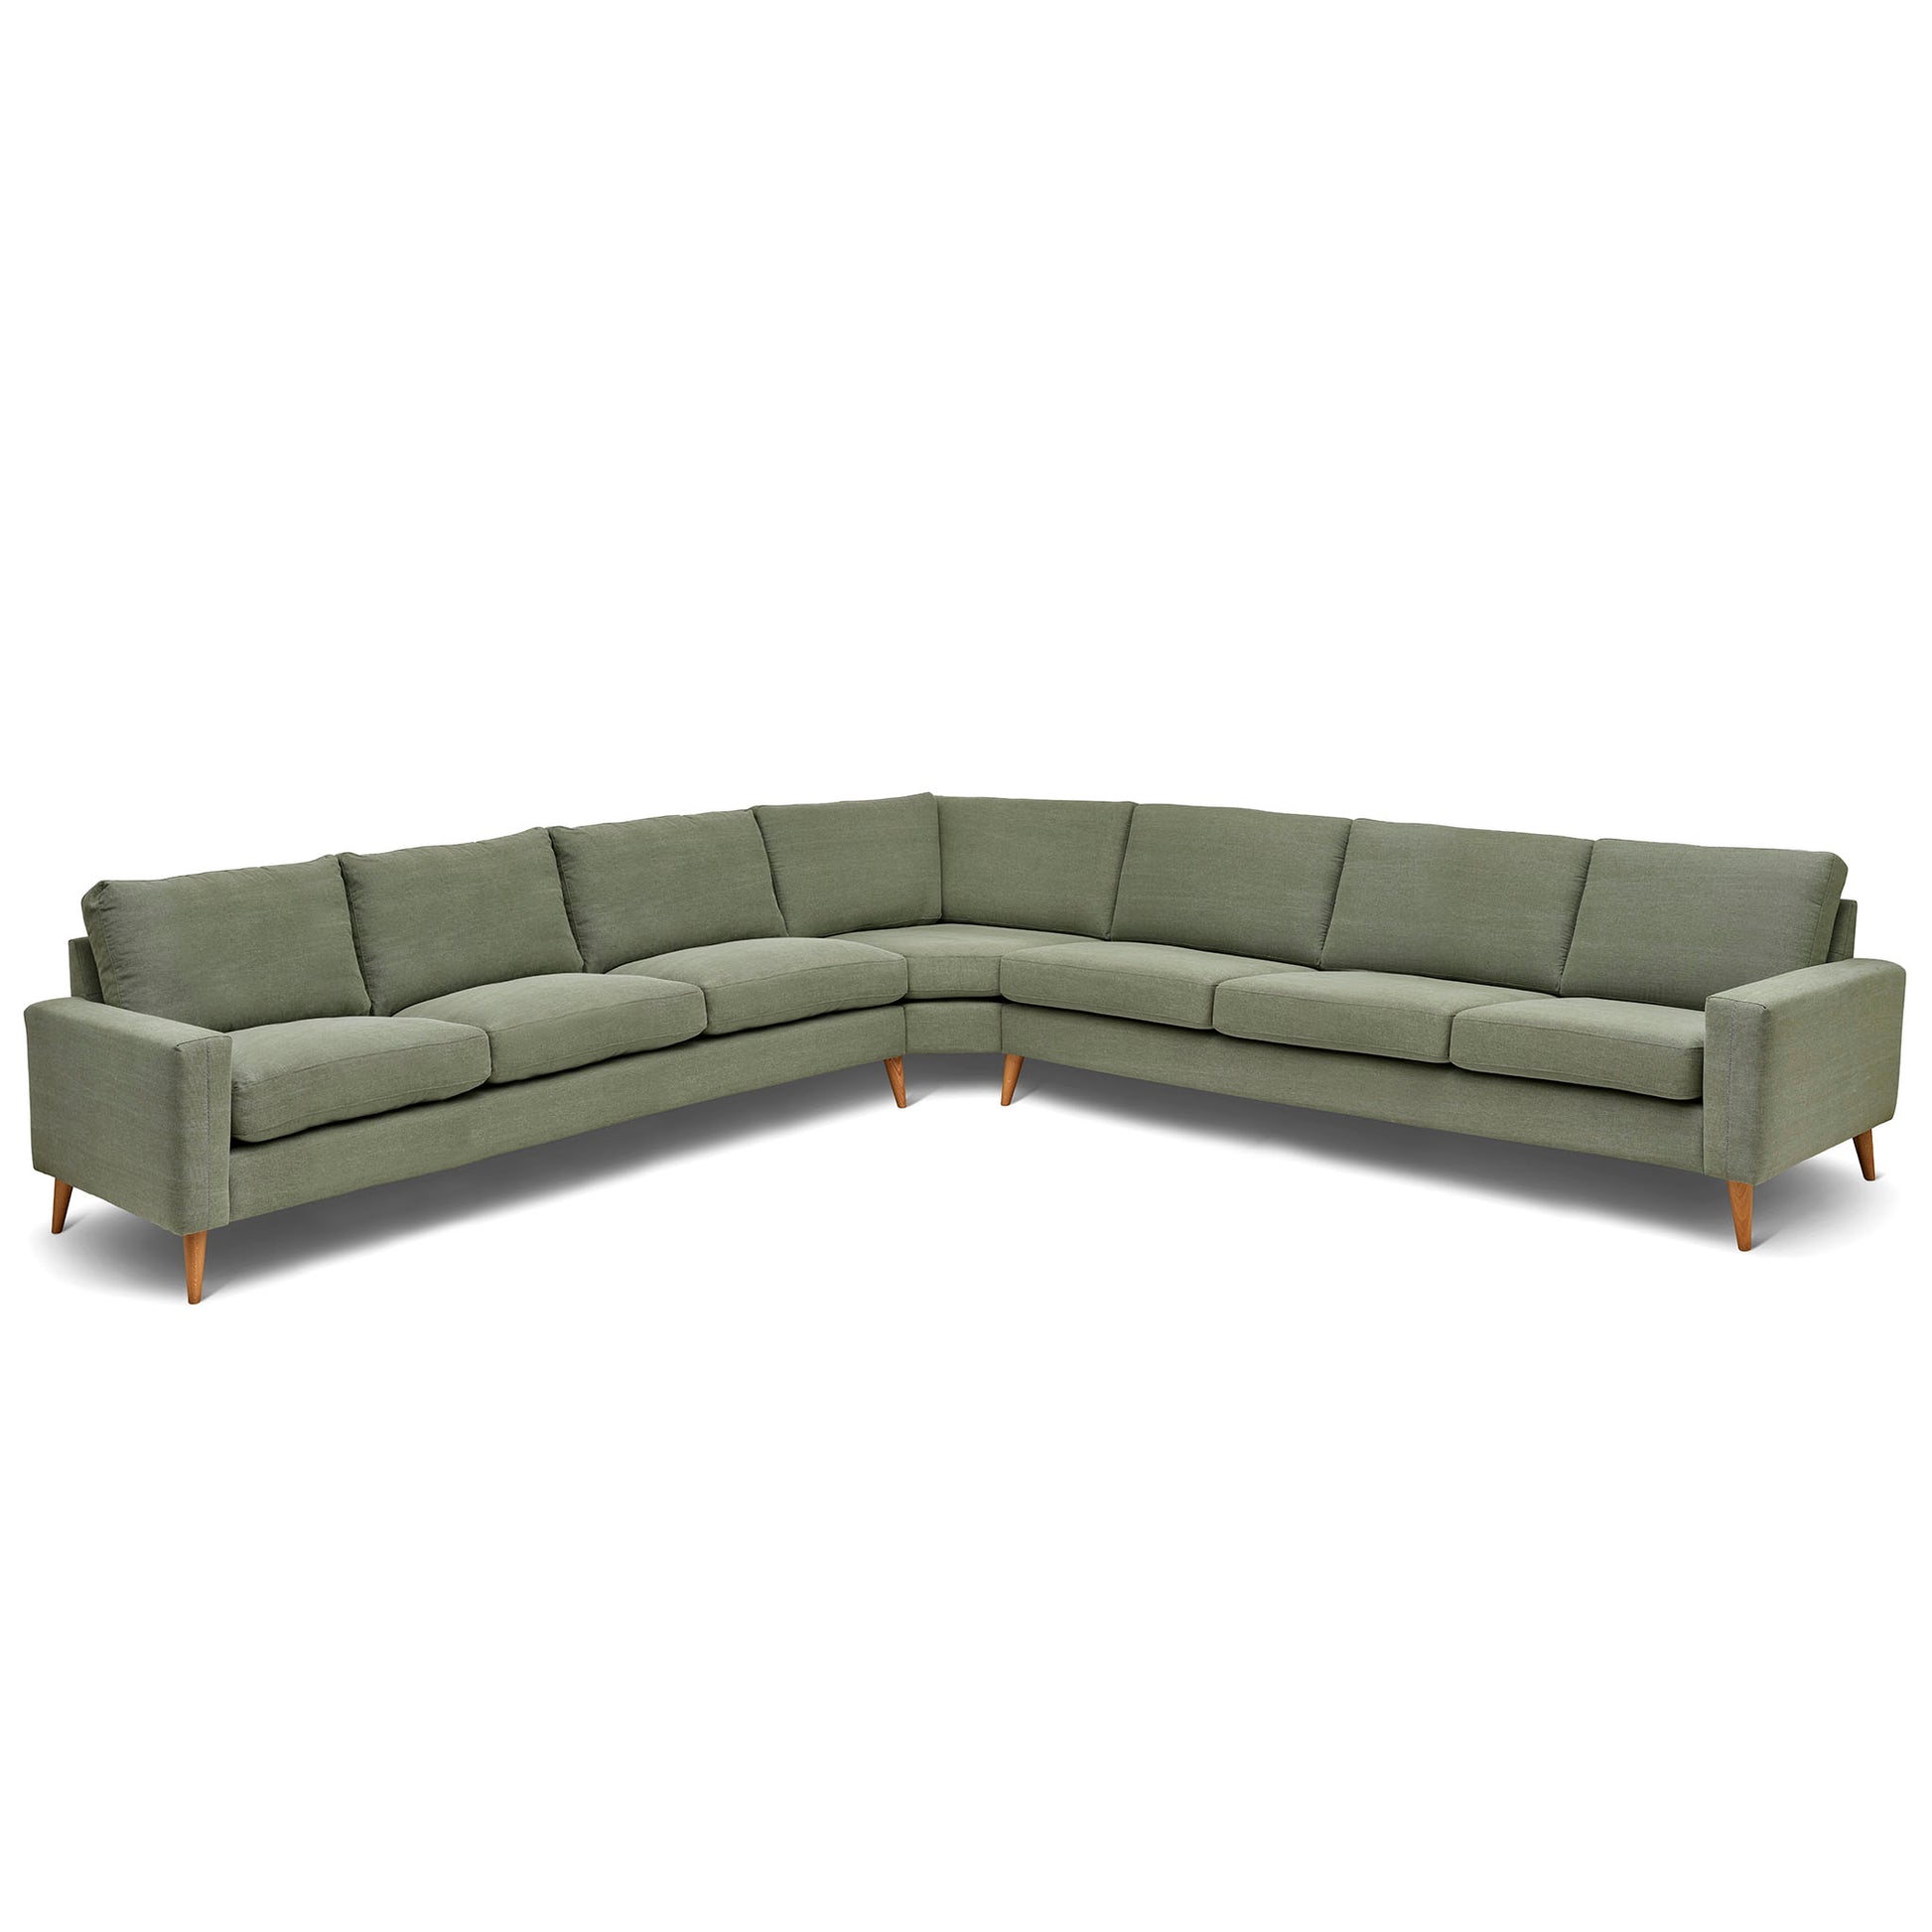 Stor kvadratisk hörnsoffa med måttet 360x360 cm. Sittvänlig soffa för äldre i grågrönt tyg